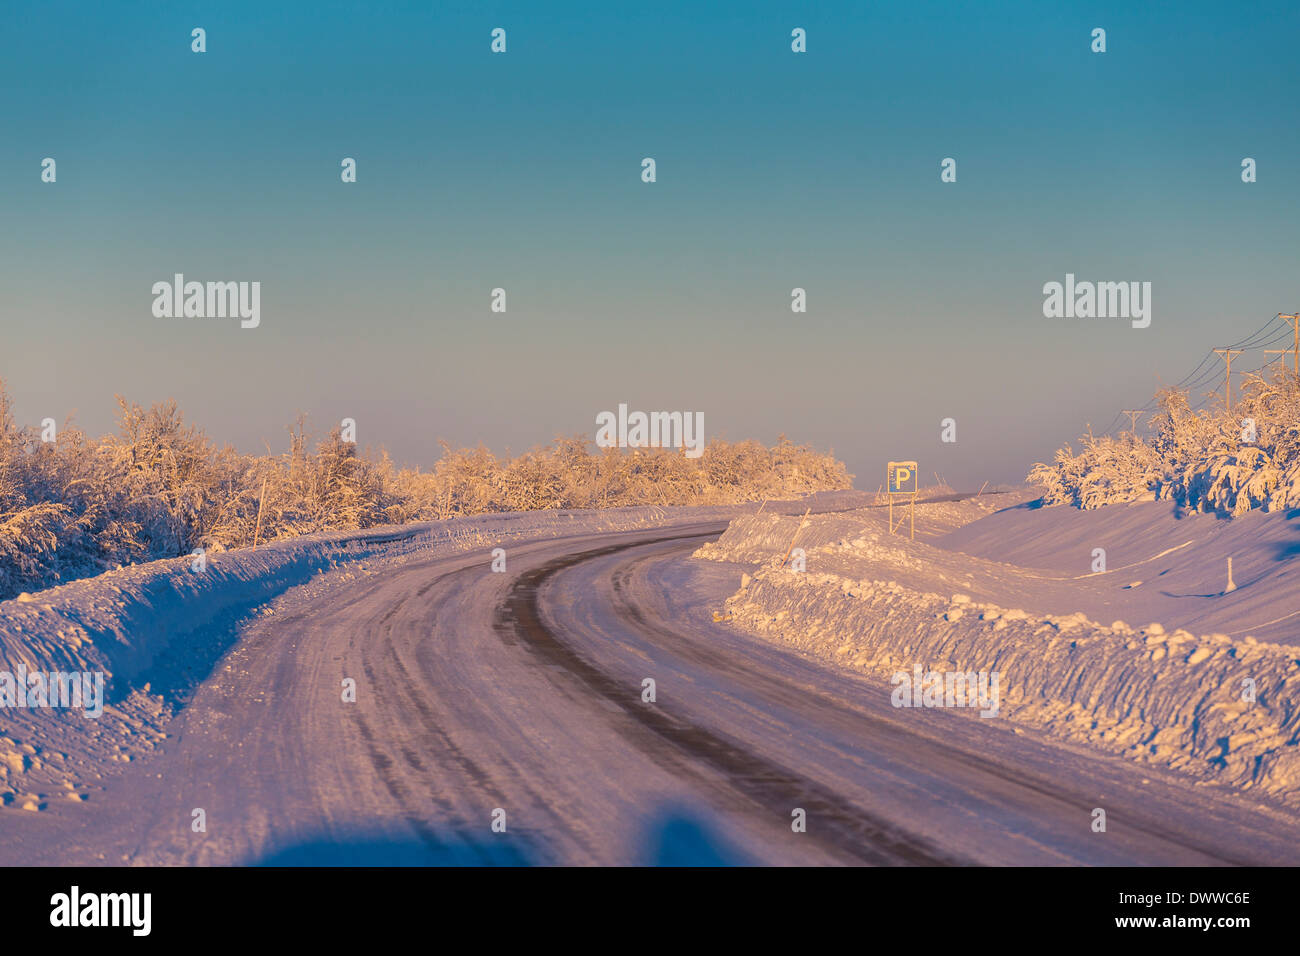 Route et paysage gelé de froid, des températures aussi basses que -47 degrés Celsius, Laponie, Suède Banque D'Images